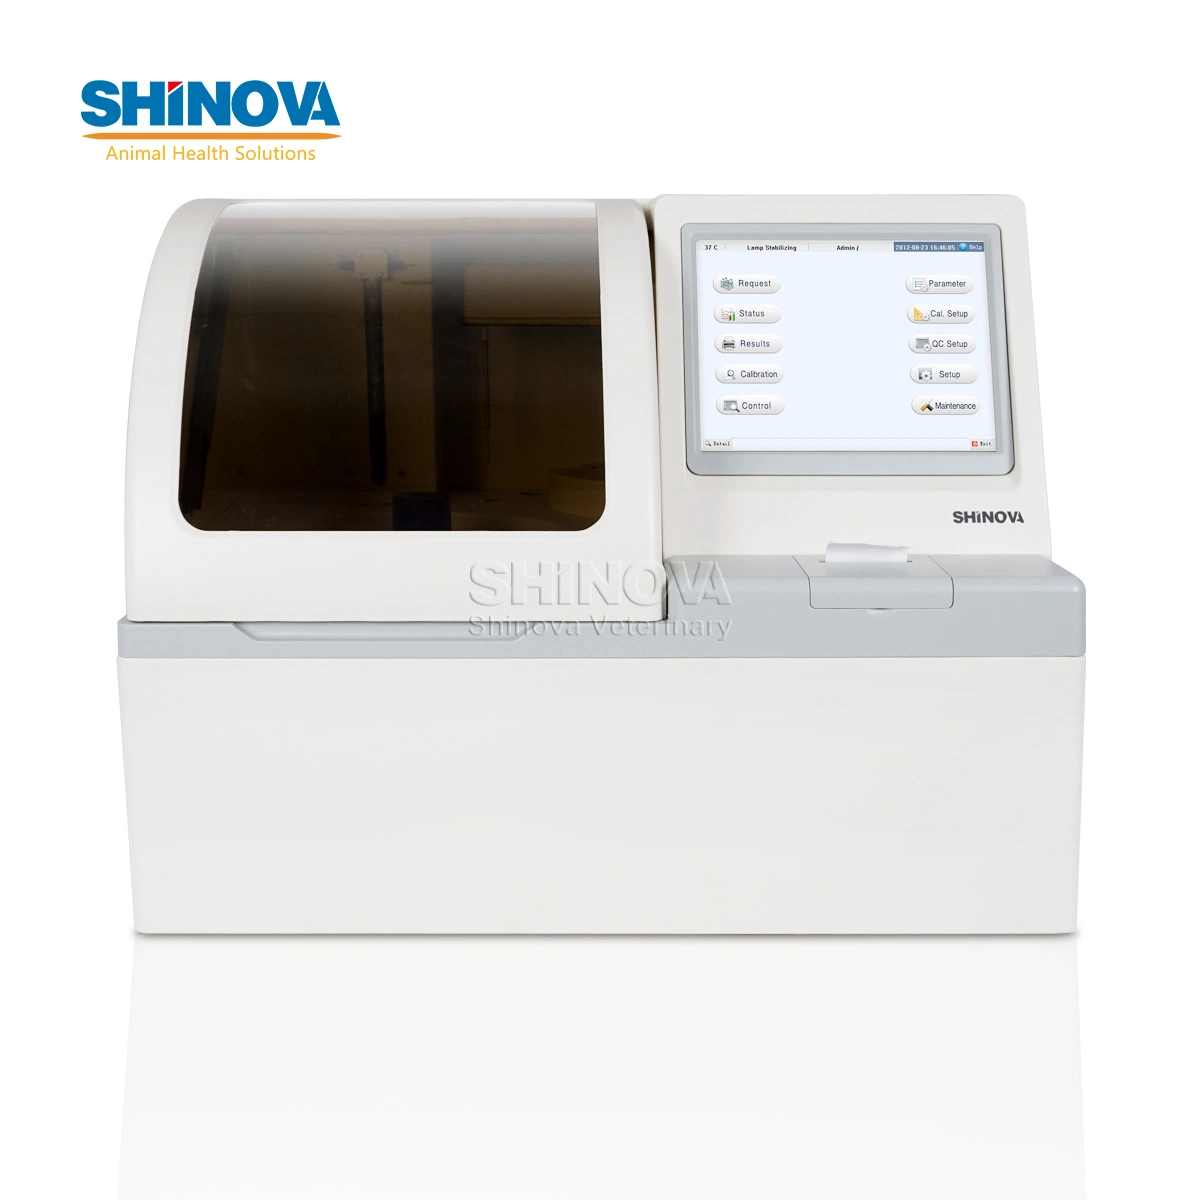 Shinova Multi-Language (لغة متعددة) بشكل كامل محلل الكيمياء تحليل الدم معدات اختبار الدم Vet معدات مختبر محلل الكيمياء الحيوية لاستخدام المستشفى البيطري